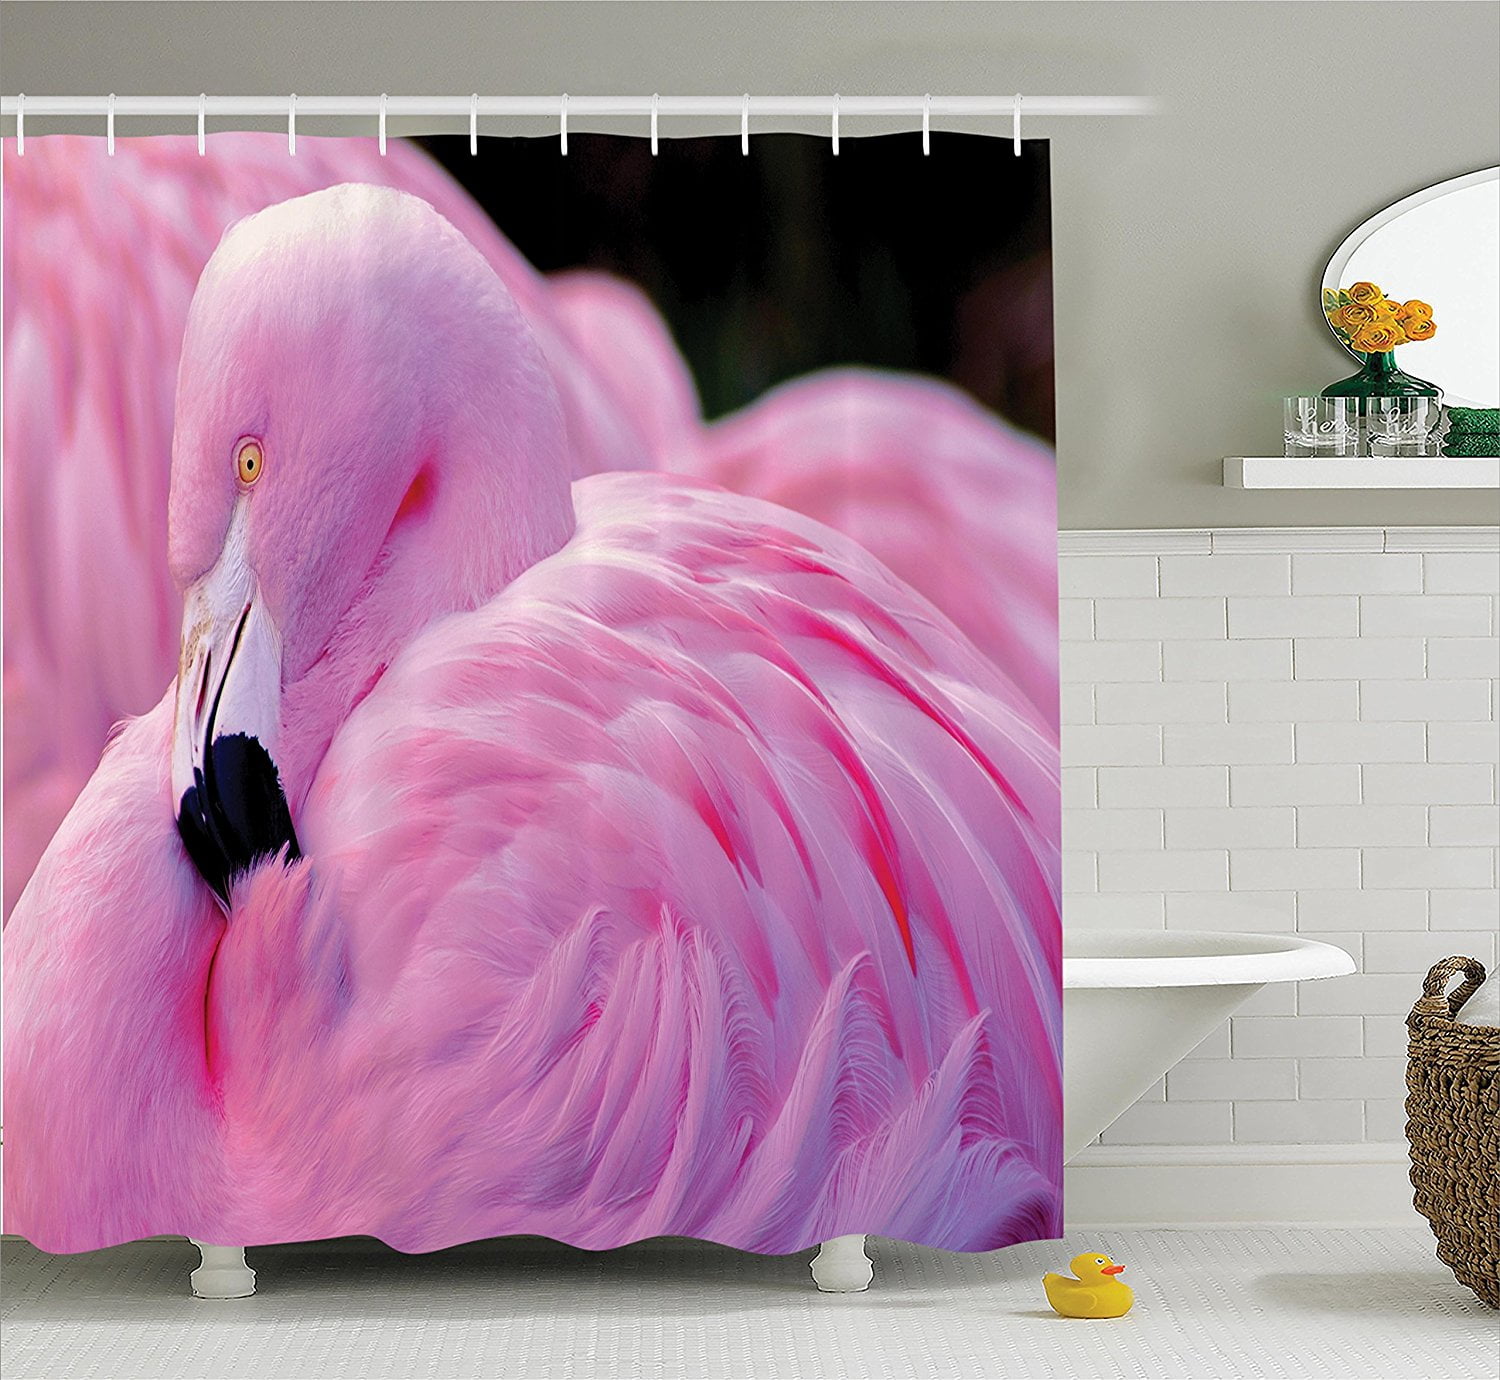 72X72" Flamingo Walking in River Beautiful Shower Curtain Bath Mat Rug Free Hook 